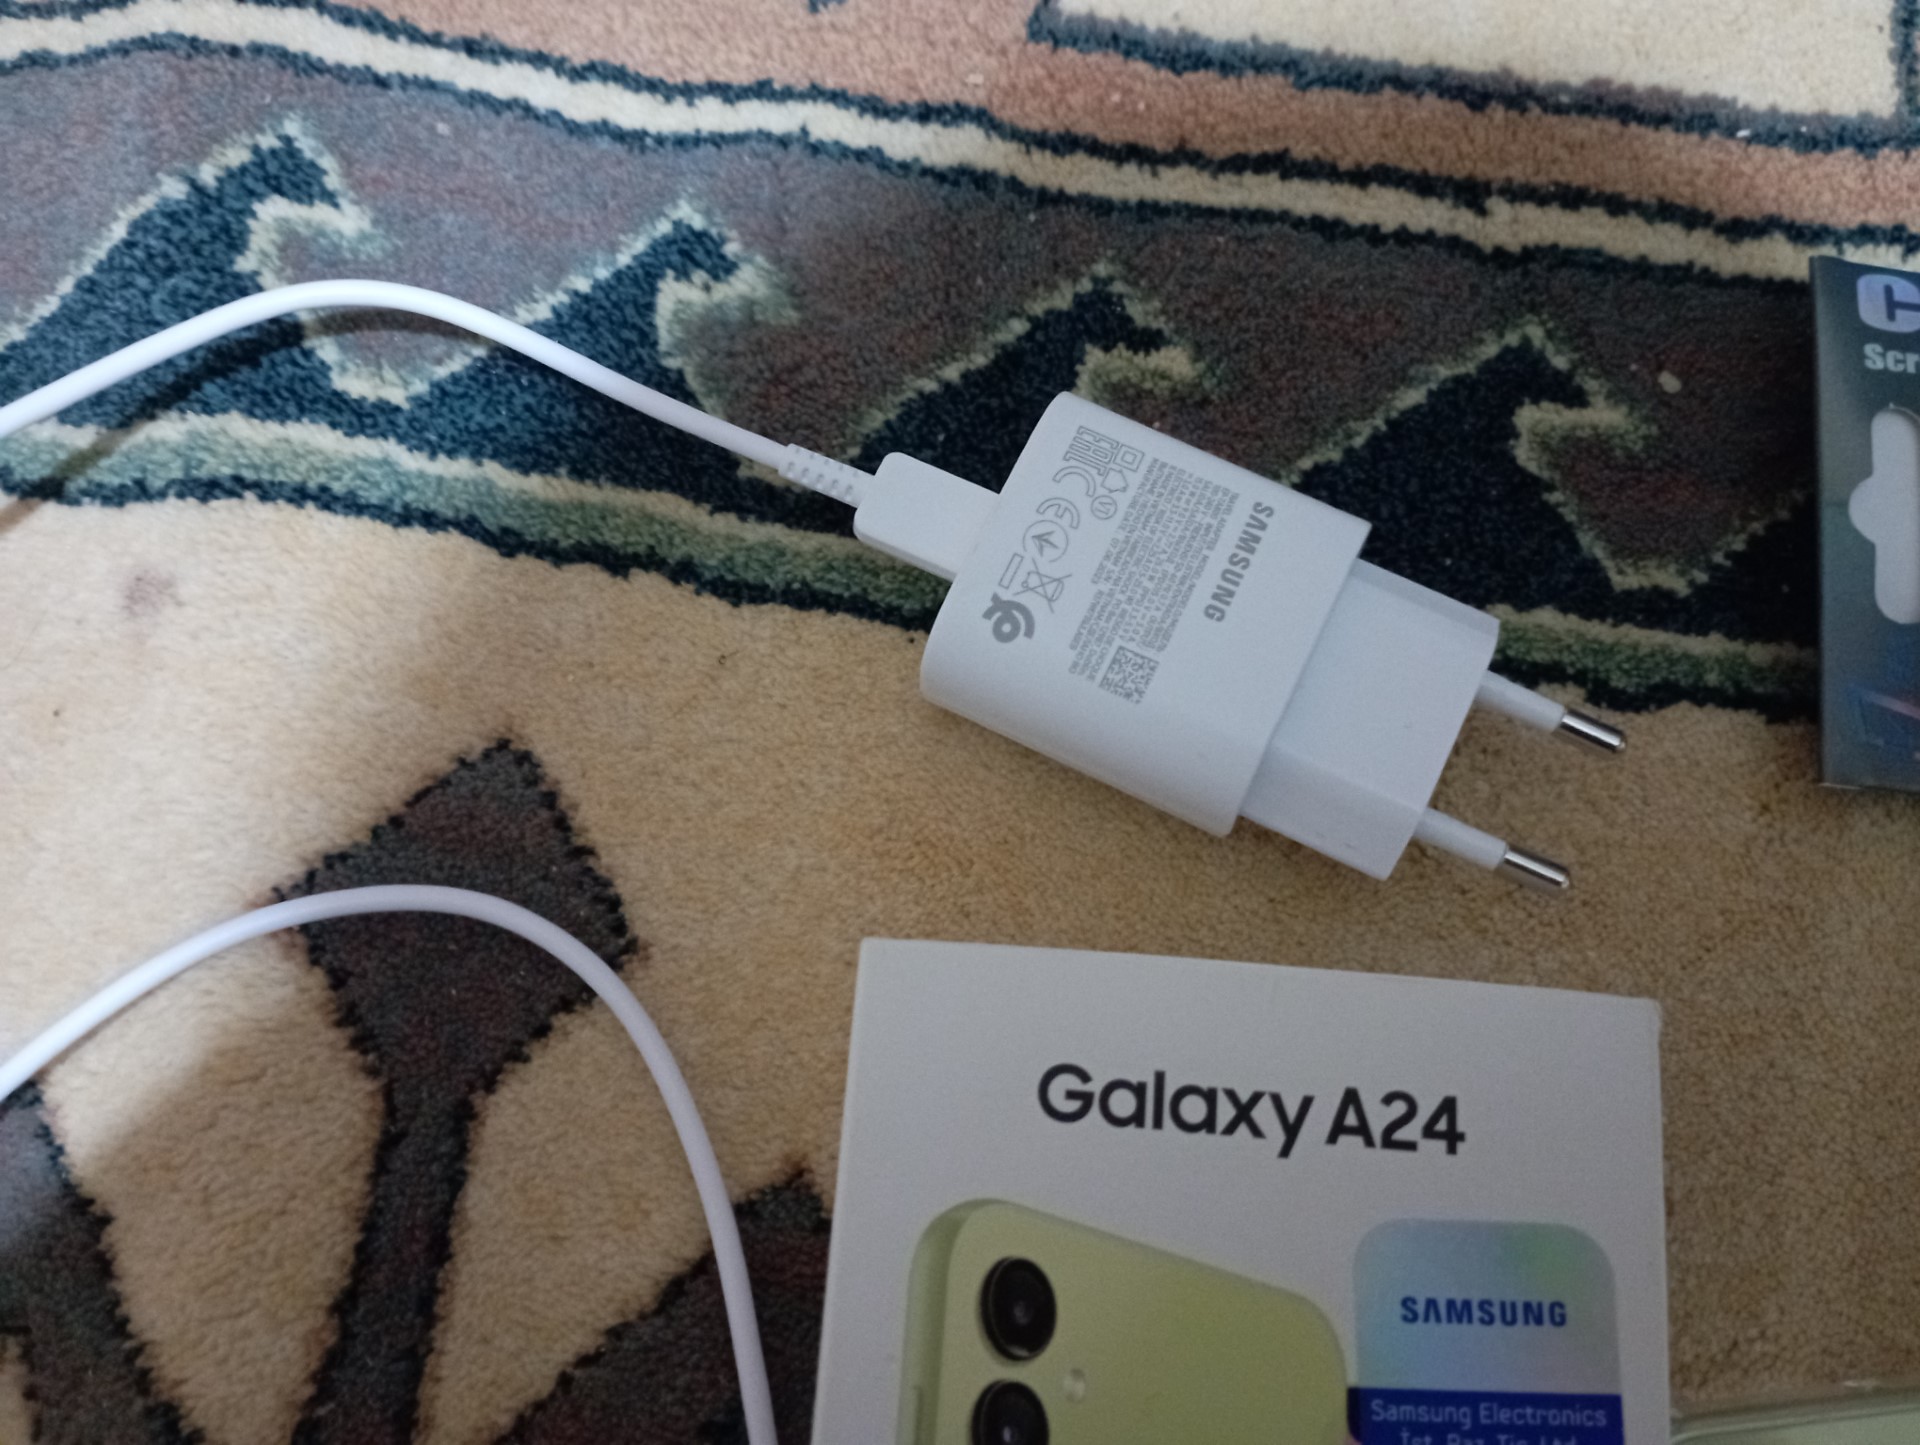 SATILDI] Samsung Galaxy A24 3.5 Aylık Orjinal Şarj aleti ile Beraber |  DonanımHaber Forum